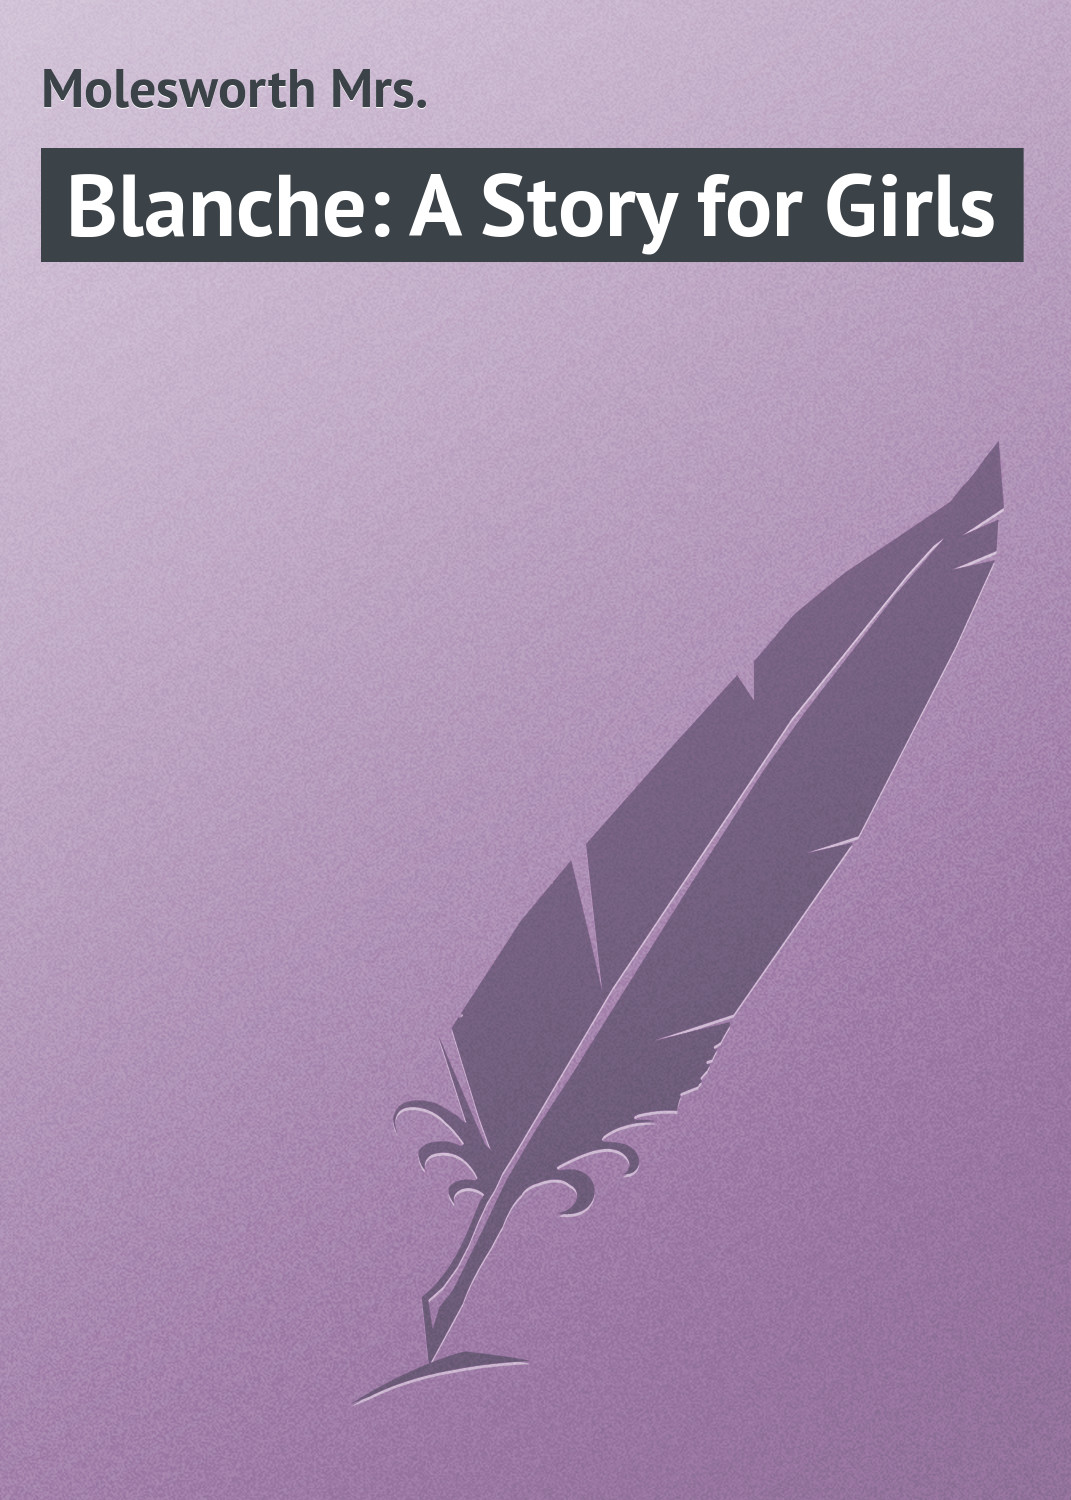 Книга Blanche: A Story for Girls из серии , созданная Mrs. Molesworth, может относится к жанру Зарубежная классика, Зарубежные детские книги. Стоимость электронной книги Blanche: A Story for Girls с идентификатором 23164971 составляет 5.99 руб.